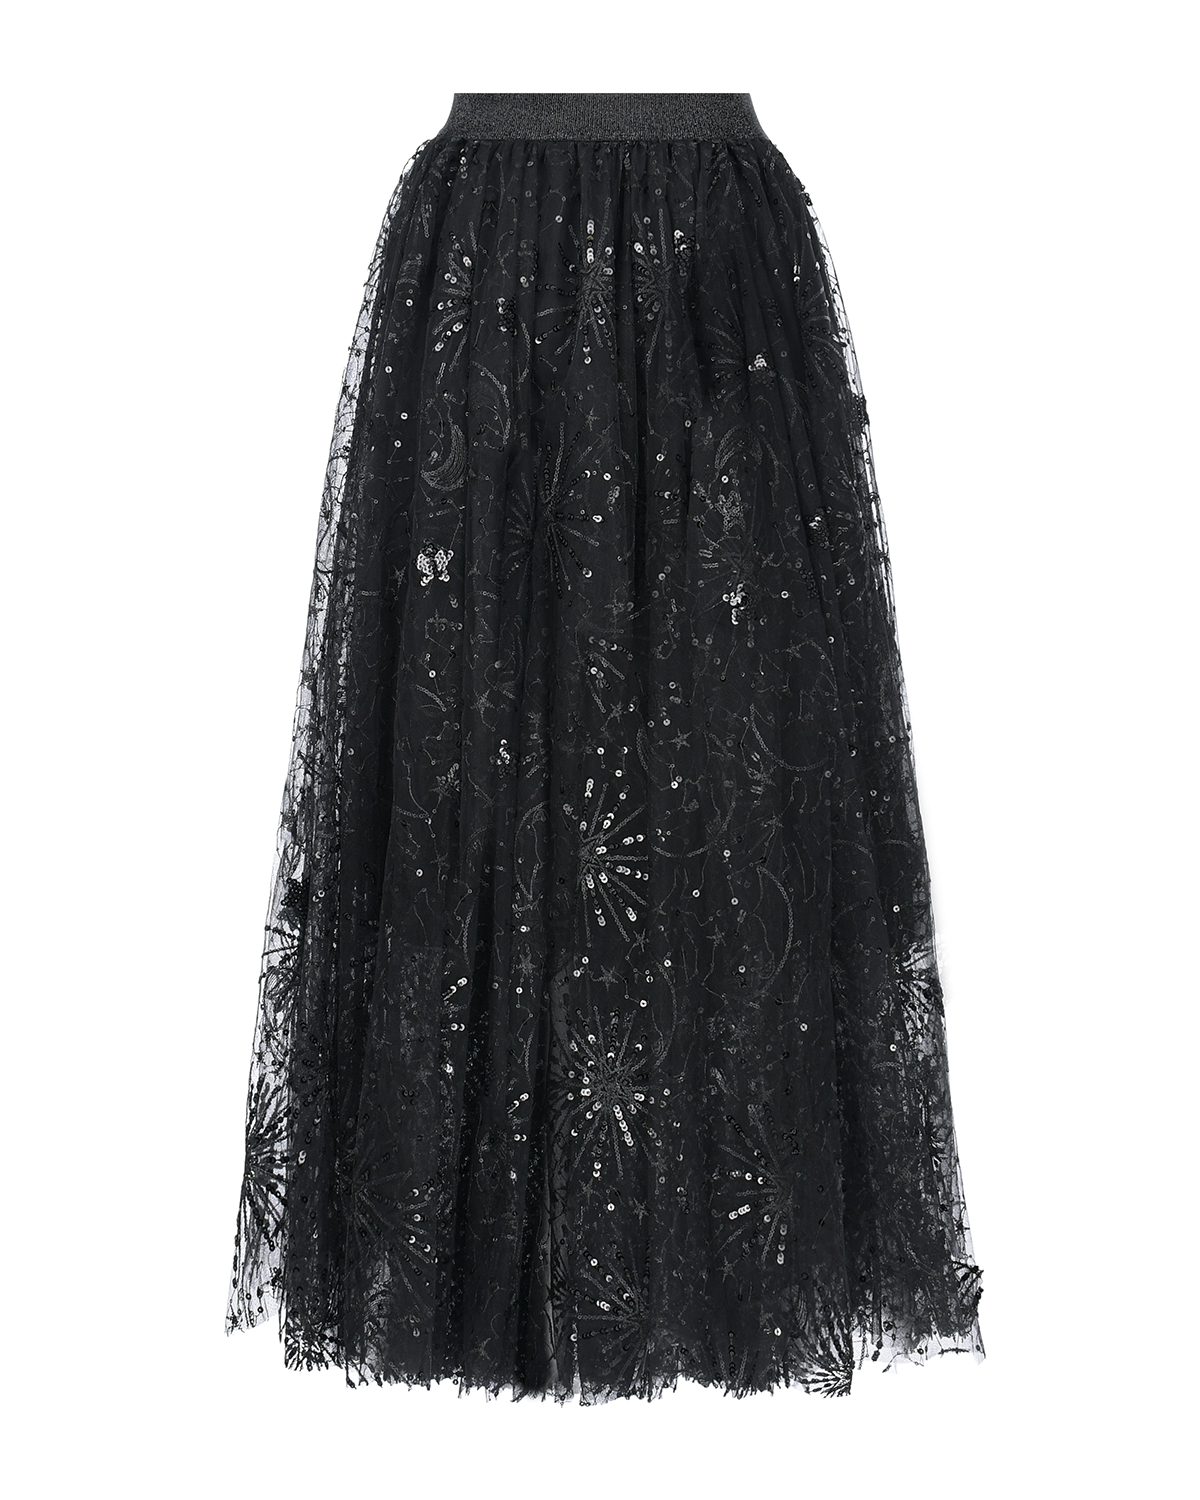 Черная юбка с пайетками Dan Maralex, размер 42, цвет черный - фото 2